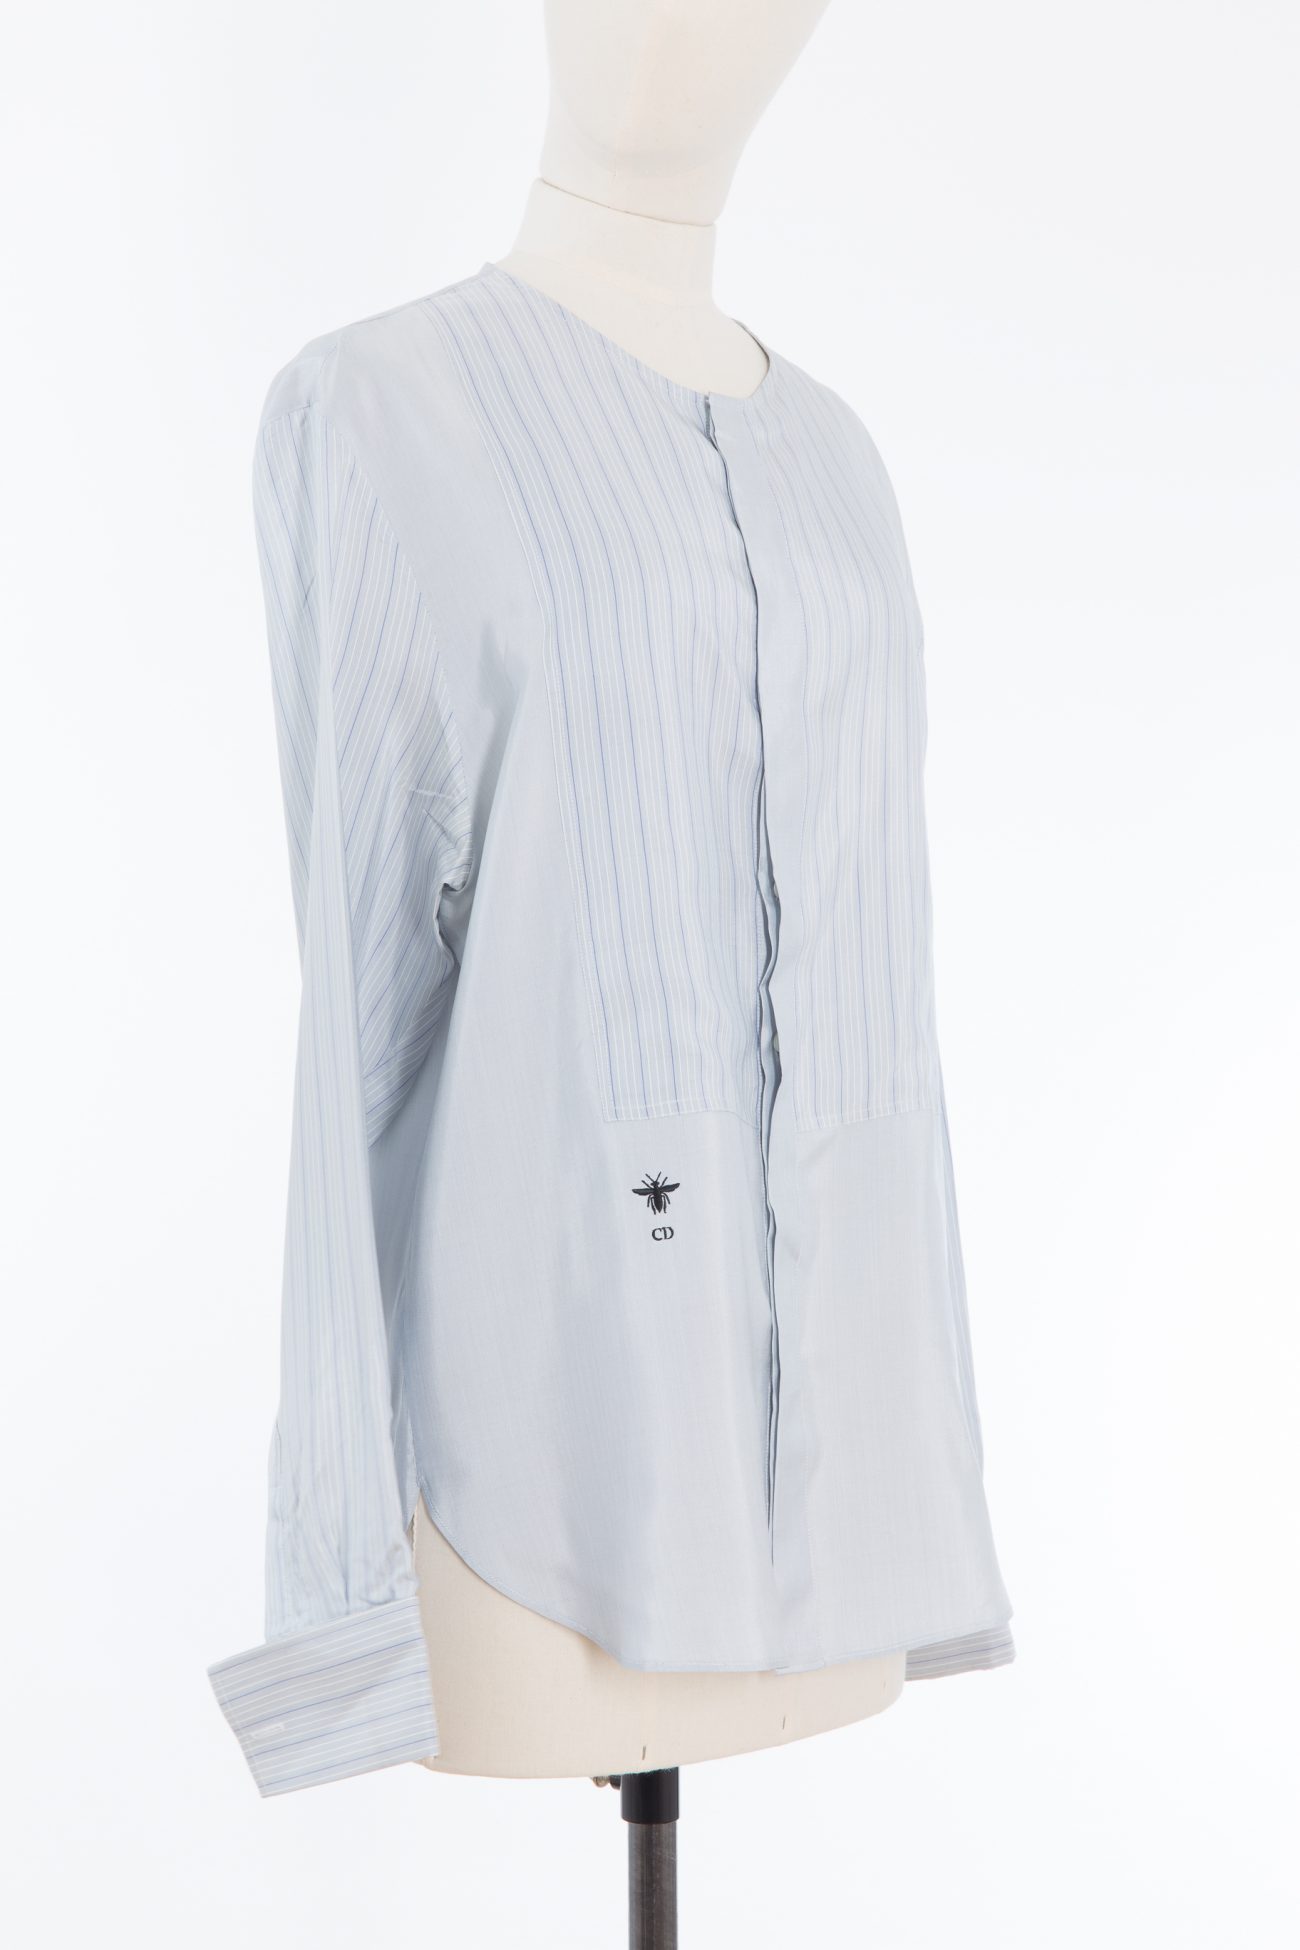 Louis Vuitton Shirt, FR42 - Huntessa Luxury Online Consignment